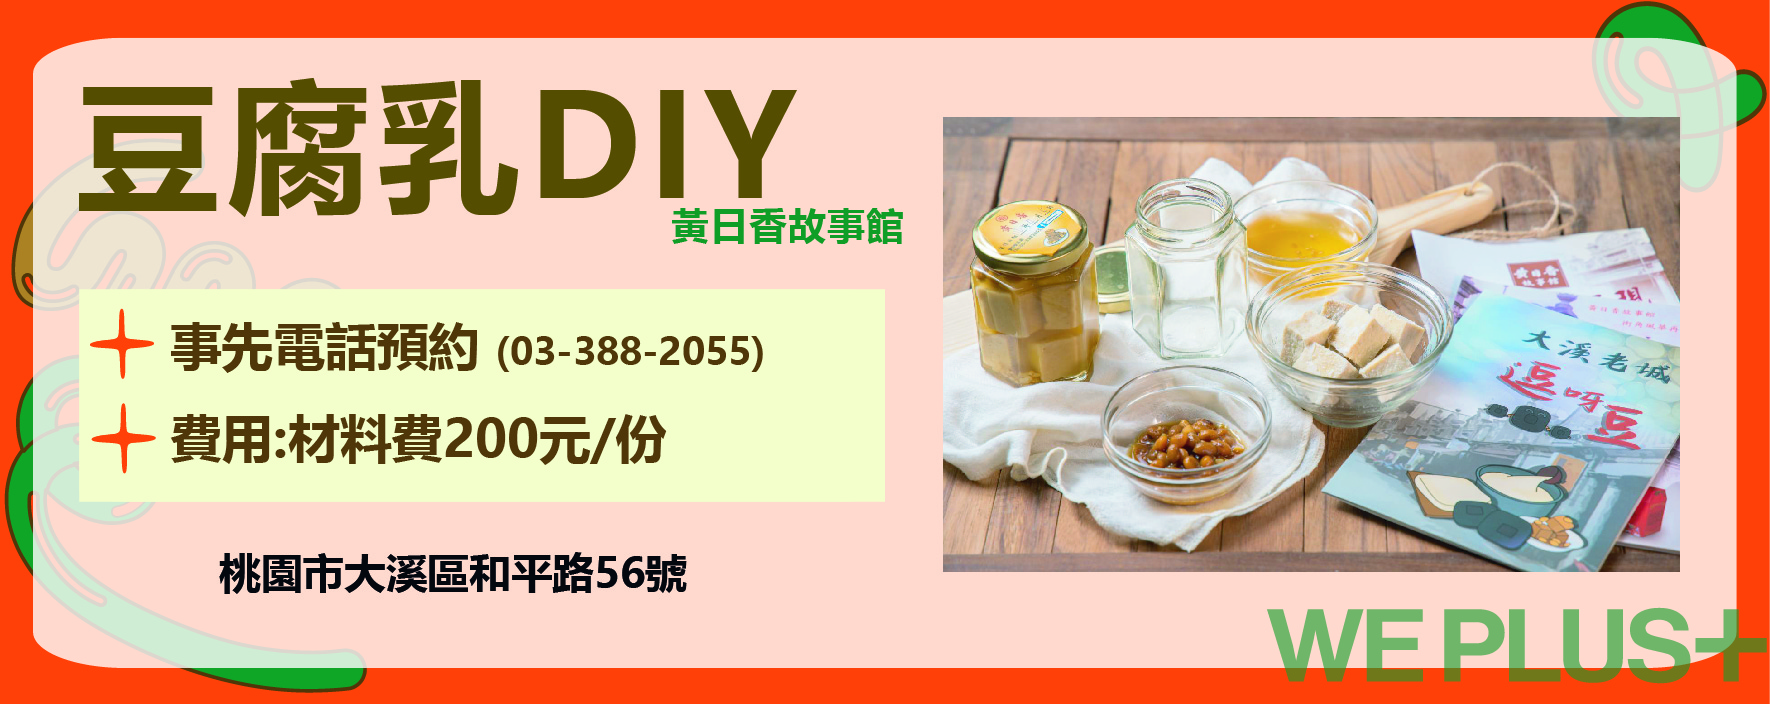 豆腐乳DIY